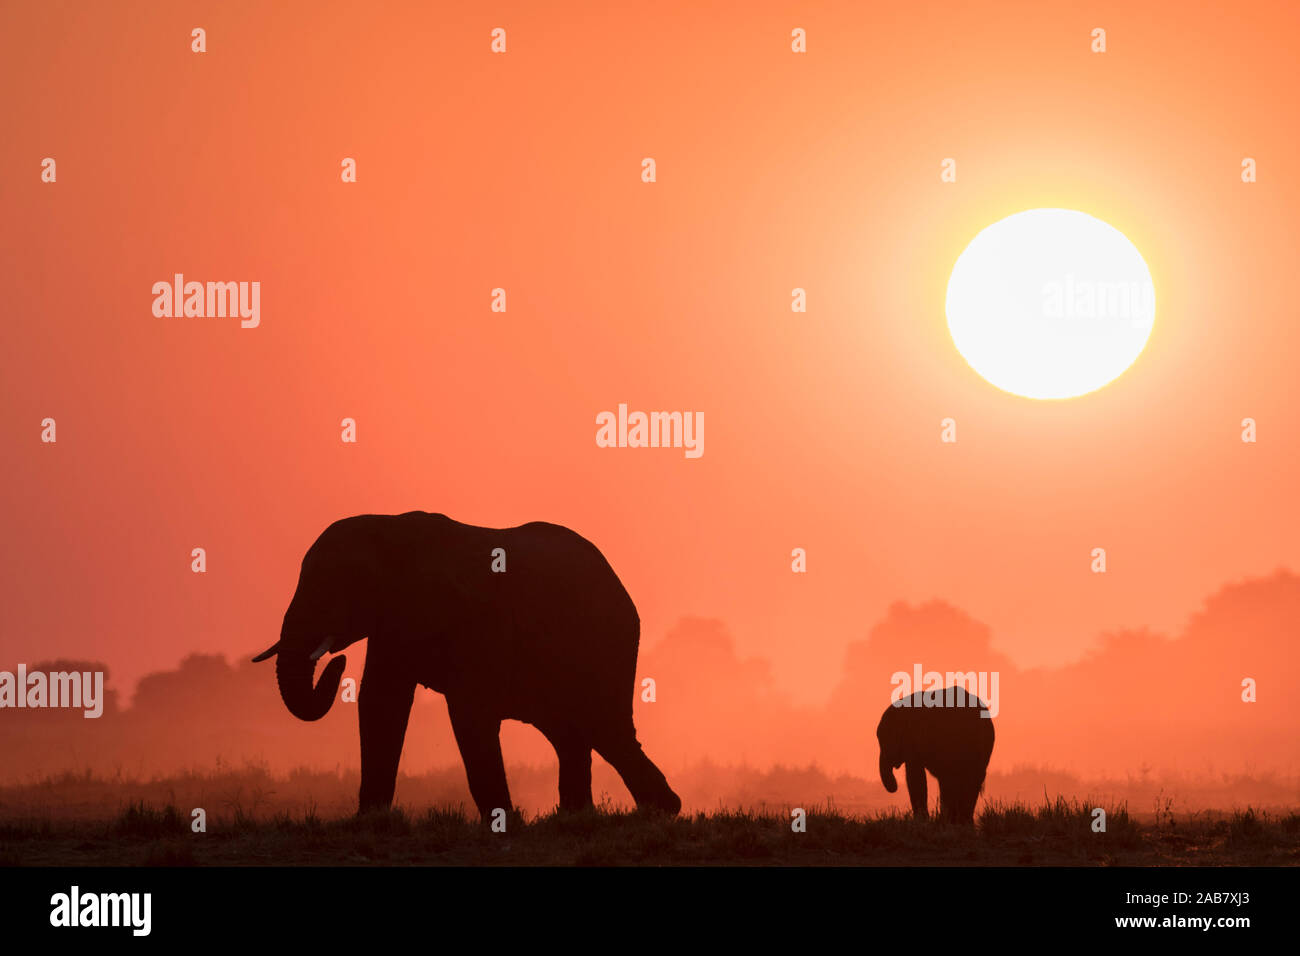 Afrikanische Elefanten (Loxodonta africana) bei Sonnenuntergang, Chobe National Park, Botswana, Afrika Stockfoto